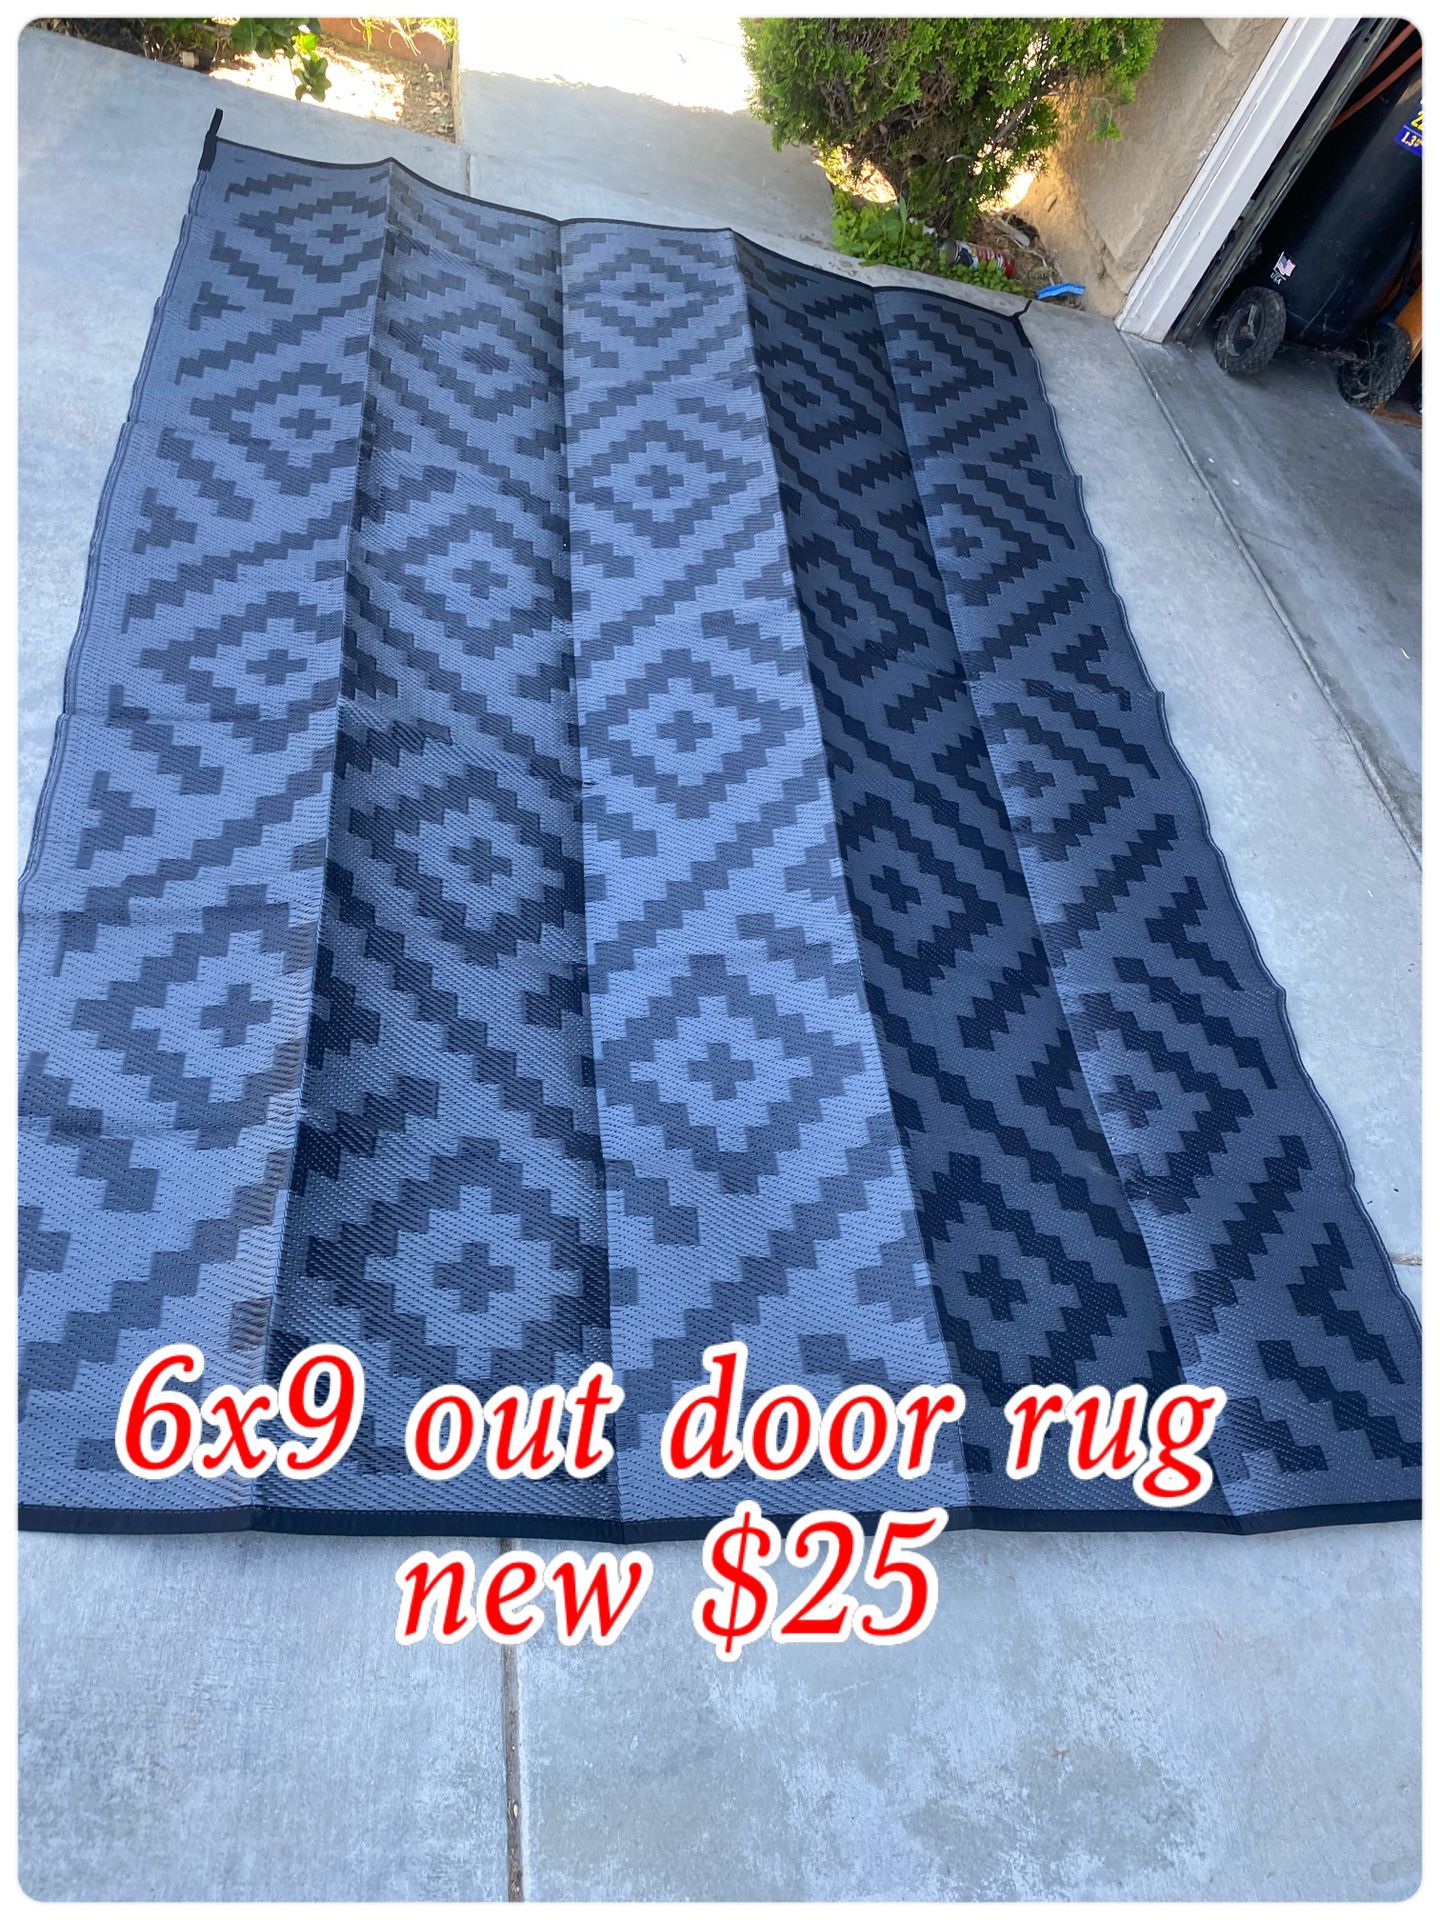 Outdoor Rug New $25